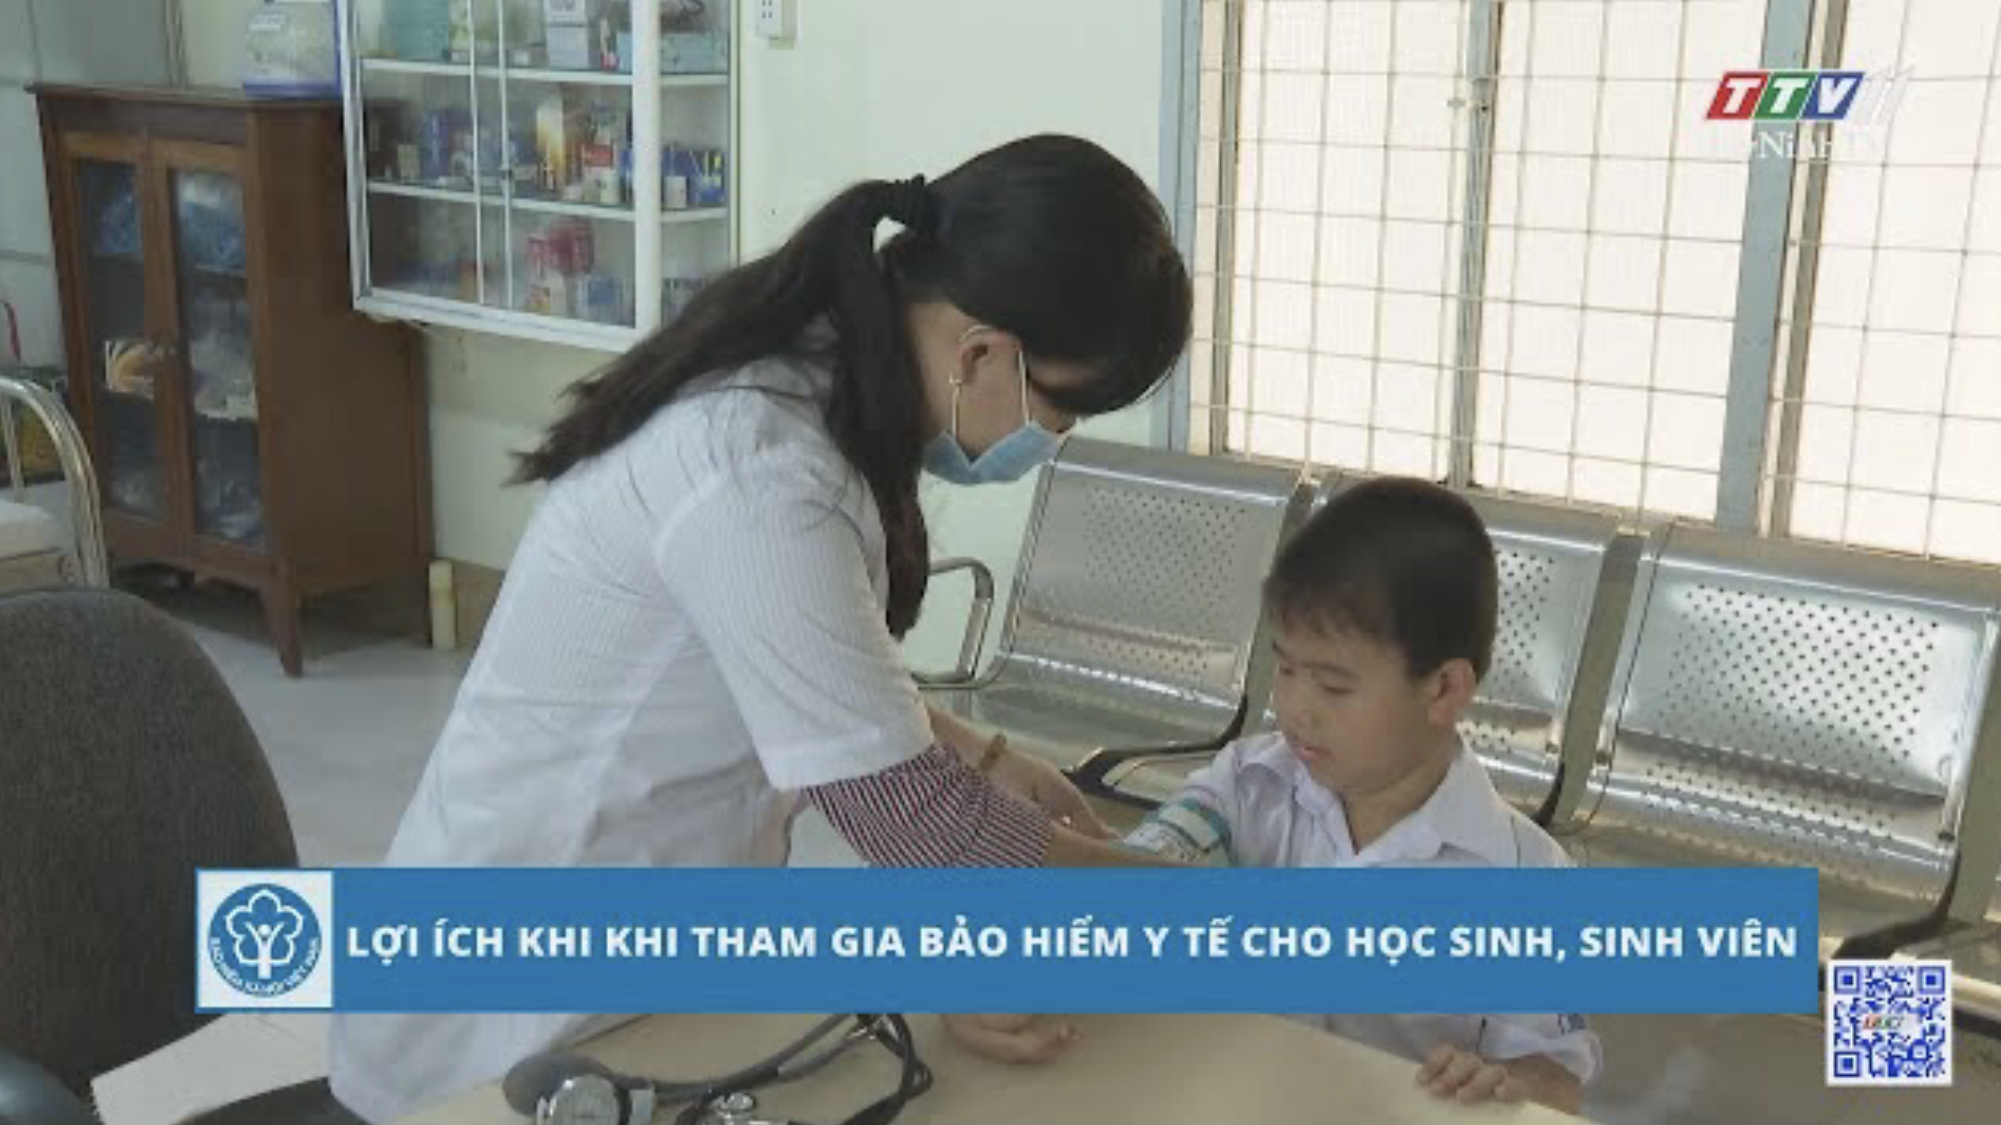 Lợi ích khi tham gia bảo hiểm y tế cho học sinh, sinh viên | BẢO HIỂM XÃ HỘI | TayNinhTV